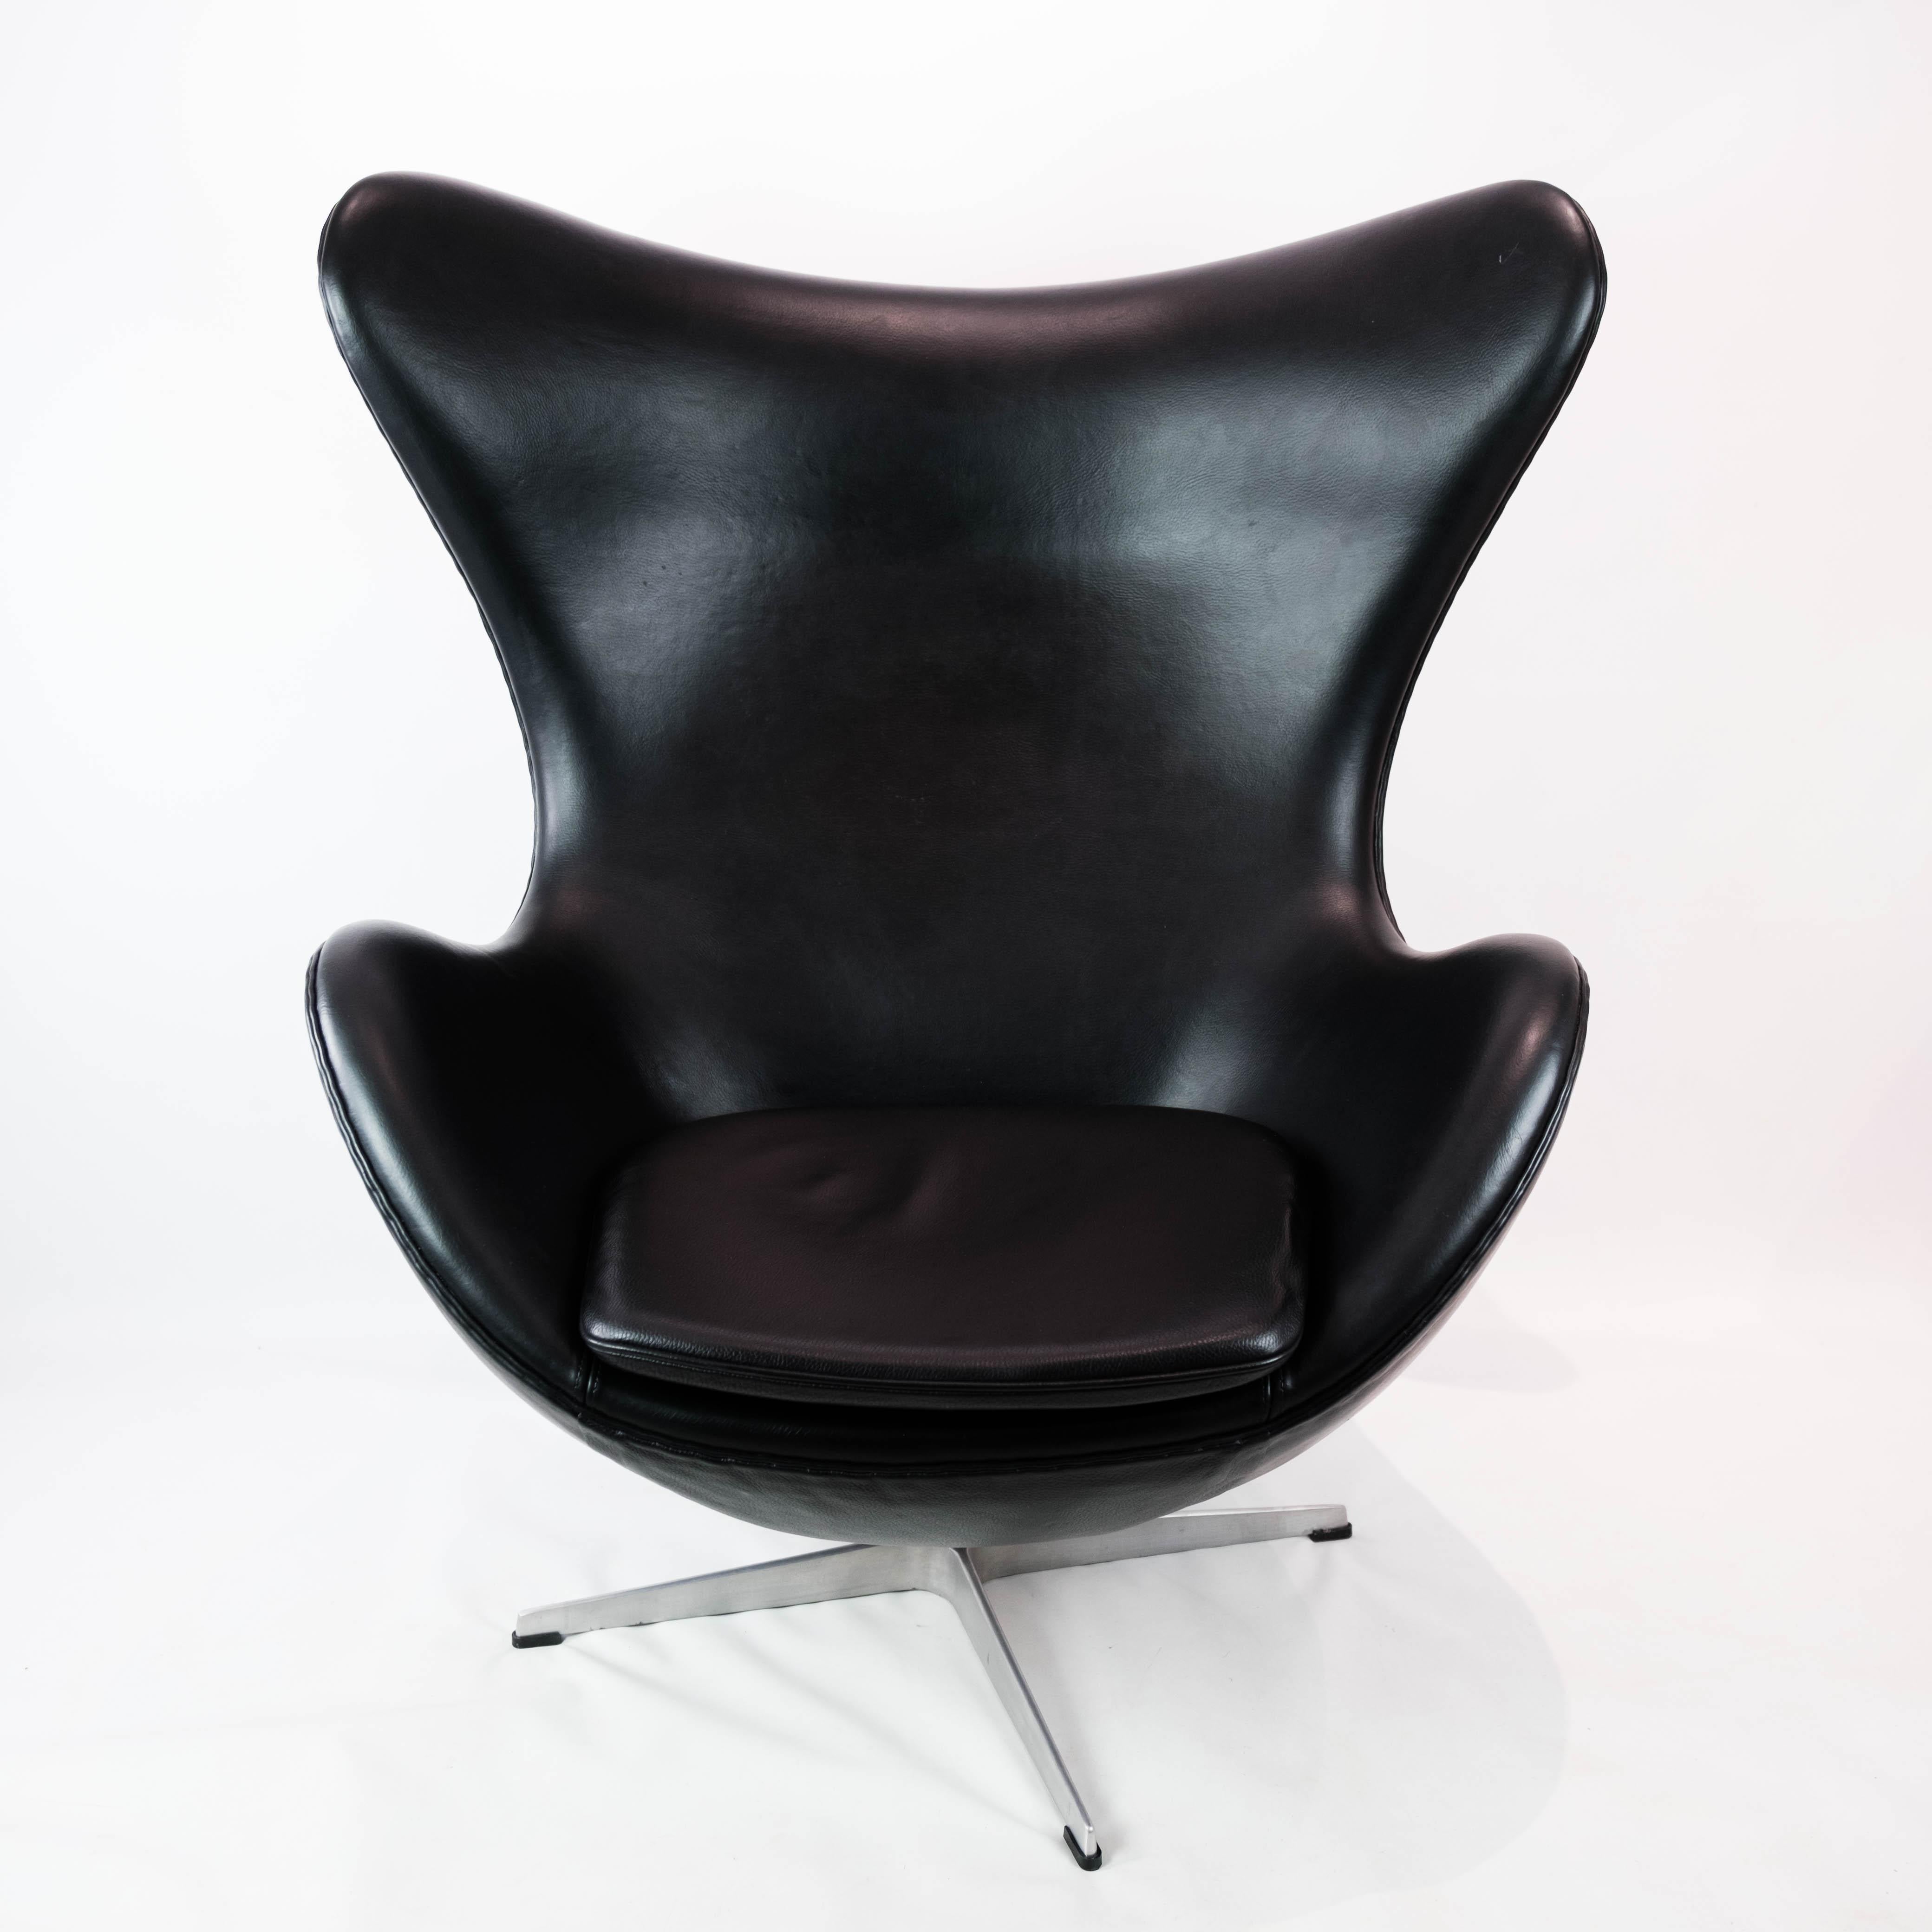 L'Icone, modèle 3316, conçu par Arne Jacobsen en 1958 et fabriqué par Fritz Hansen en 2001, est une pièce emblématique du design moderne du milieu du siècle. Cette chaise, avec sa forme incurvée distinctive et sa silhouette sculpturale, incarne